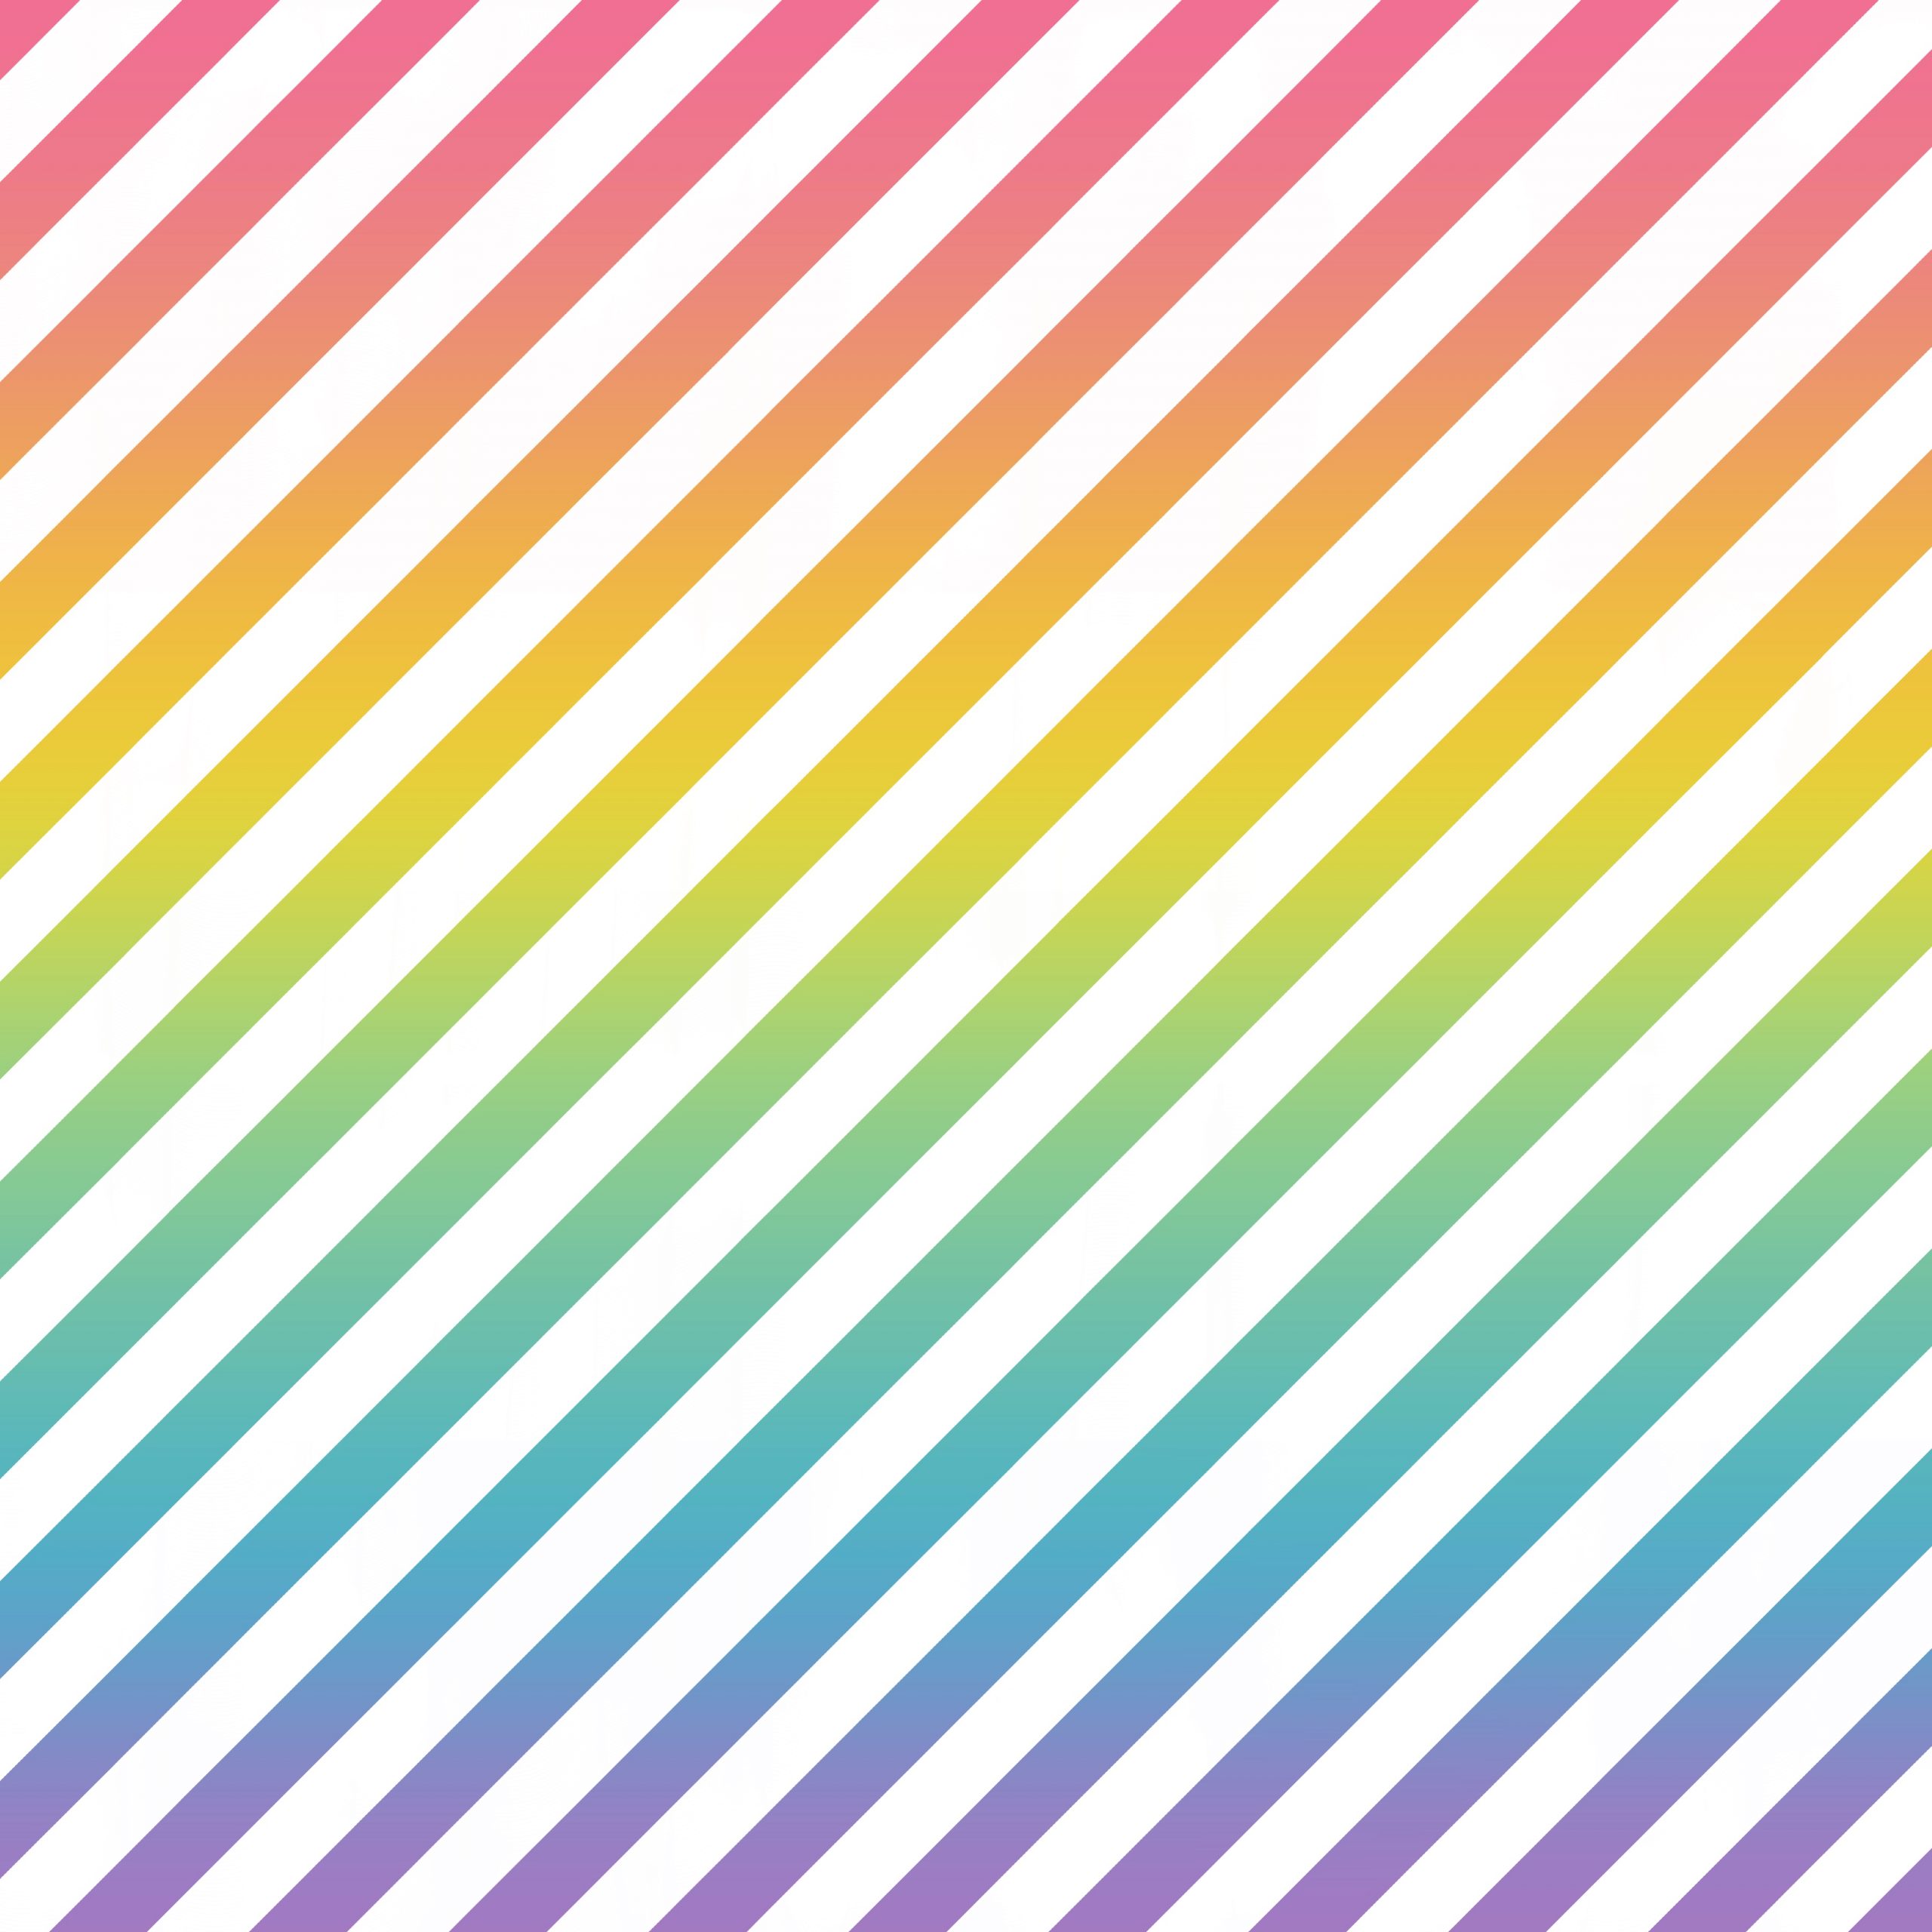 Patrón de líneas inclinadas color arcoiris en degradado y blanco intercalados